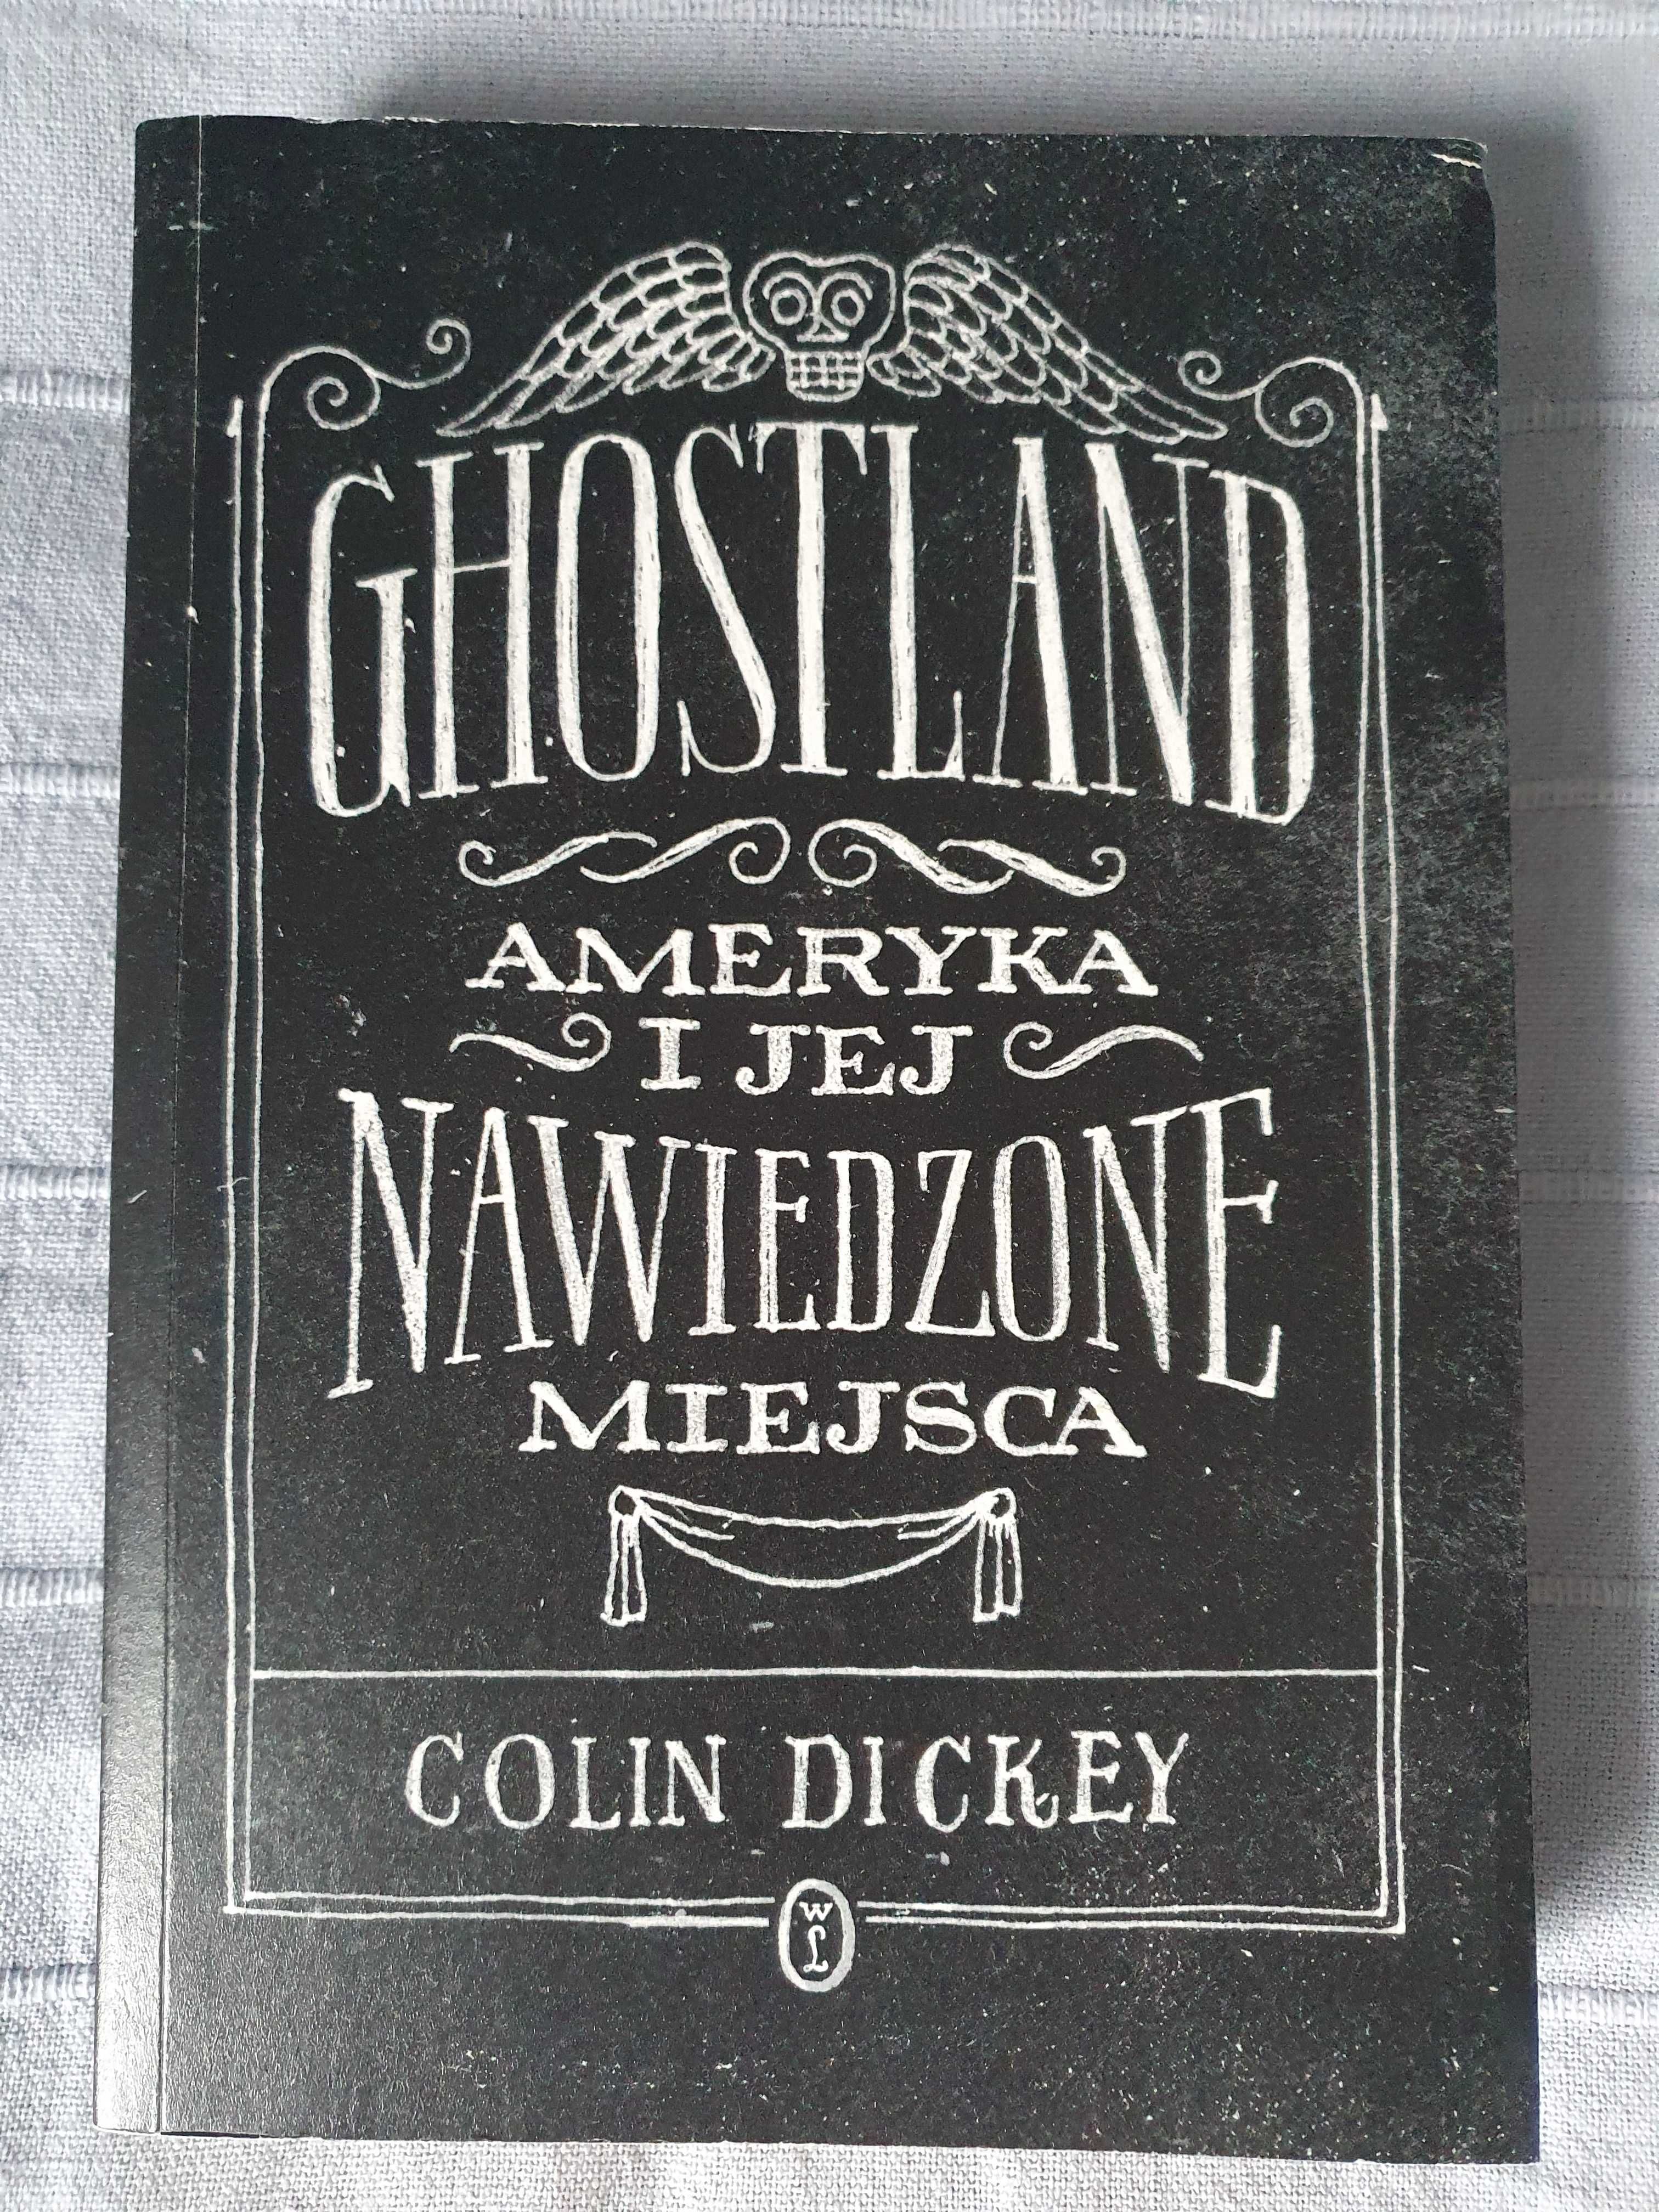 Colin Dickey, Ghostland. Ameryka i jej nawiedzone miejsca